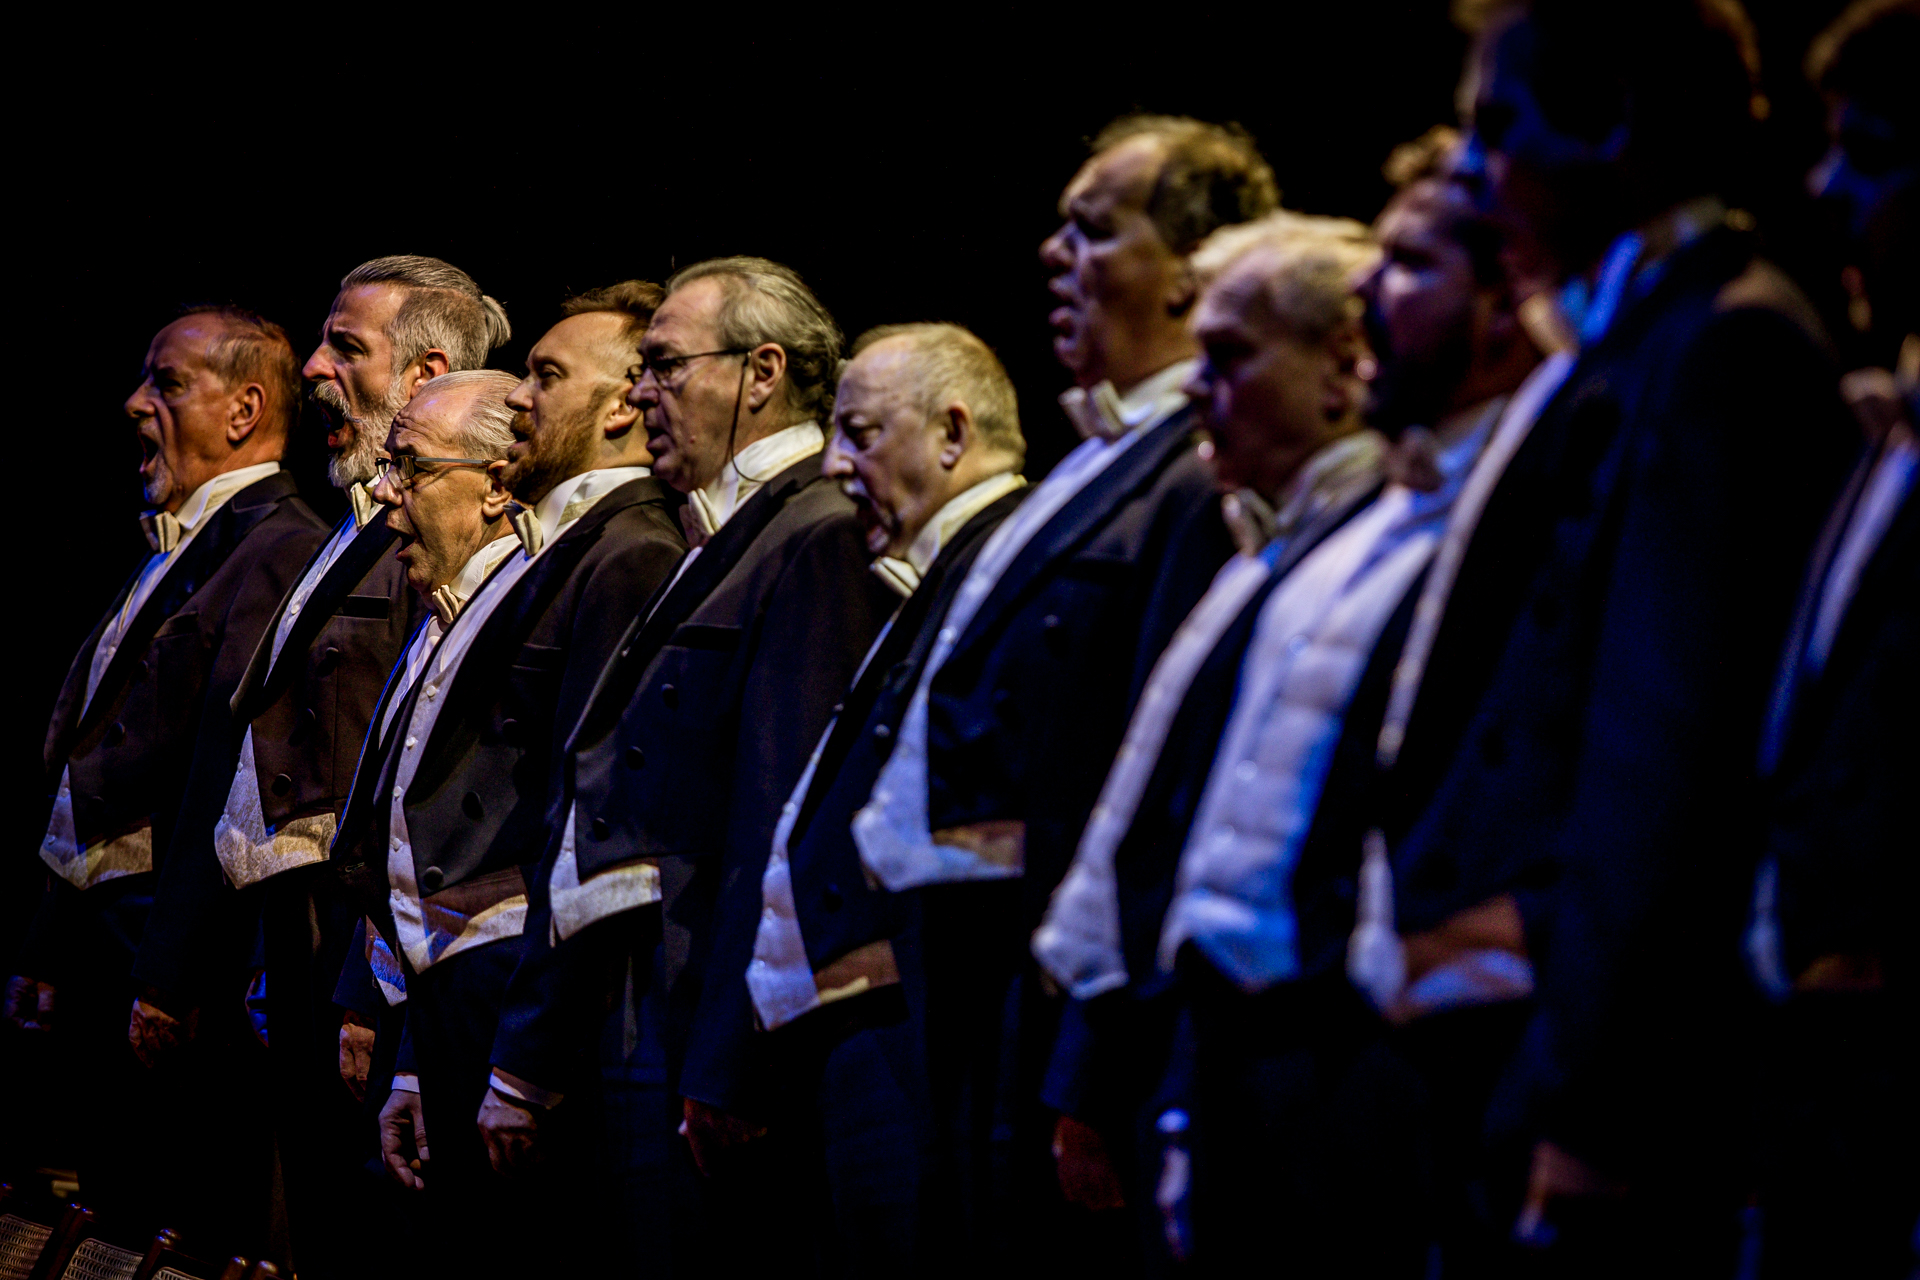 Zdjęcie. Rząd mężczyzn w średnim wieku ubranych we fraki. To chórzyści opery "Straszny dwór".